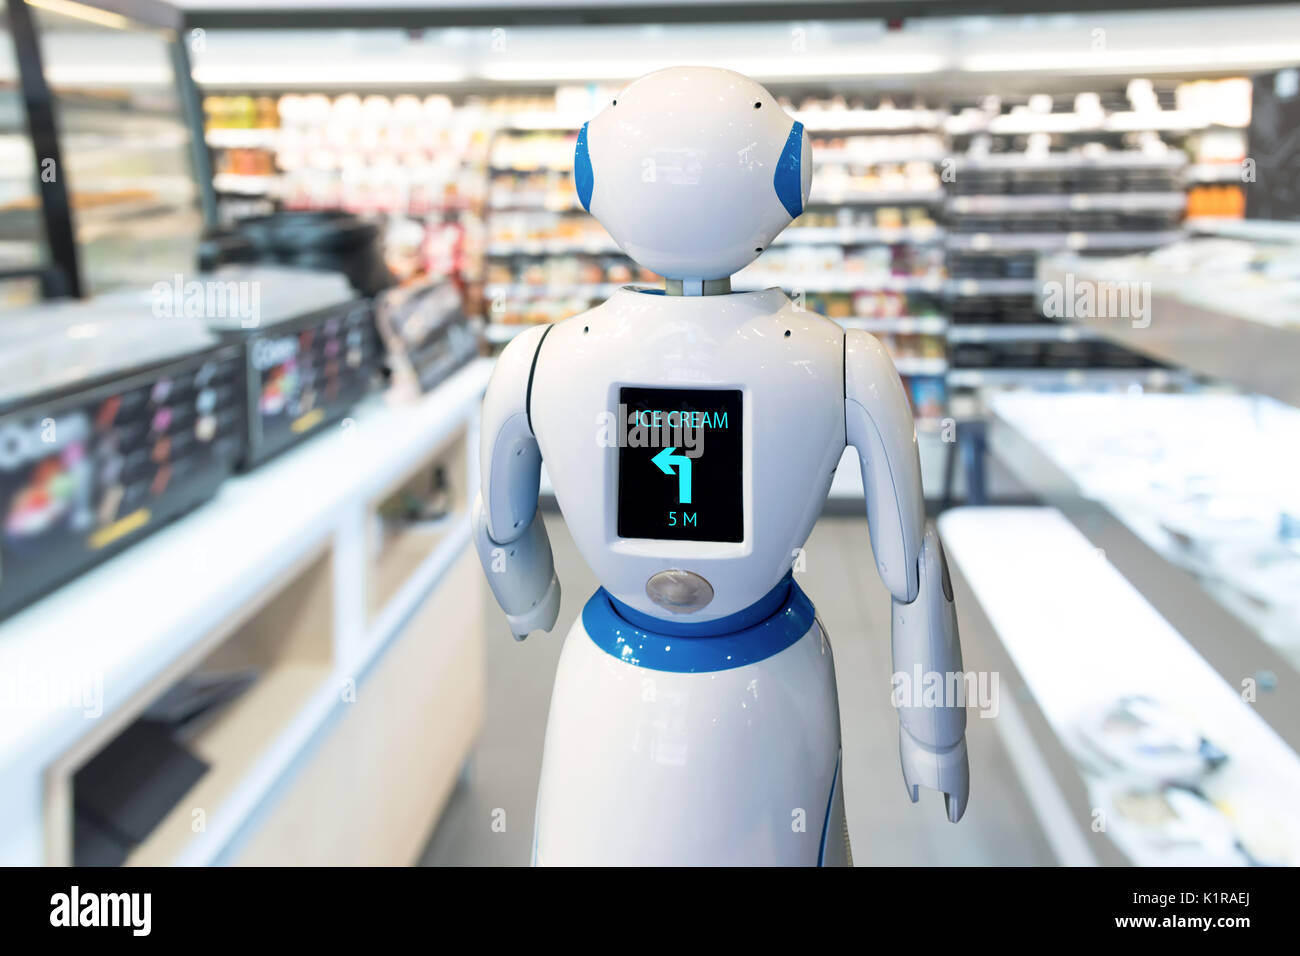 Détail Smart , robot assistant service , conseiller en technologie de navigation robo department store. Robot de marche conduisent à la clientèle guide de recherche. Banque D'Images